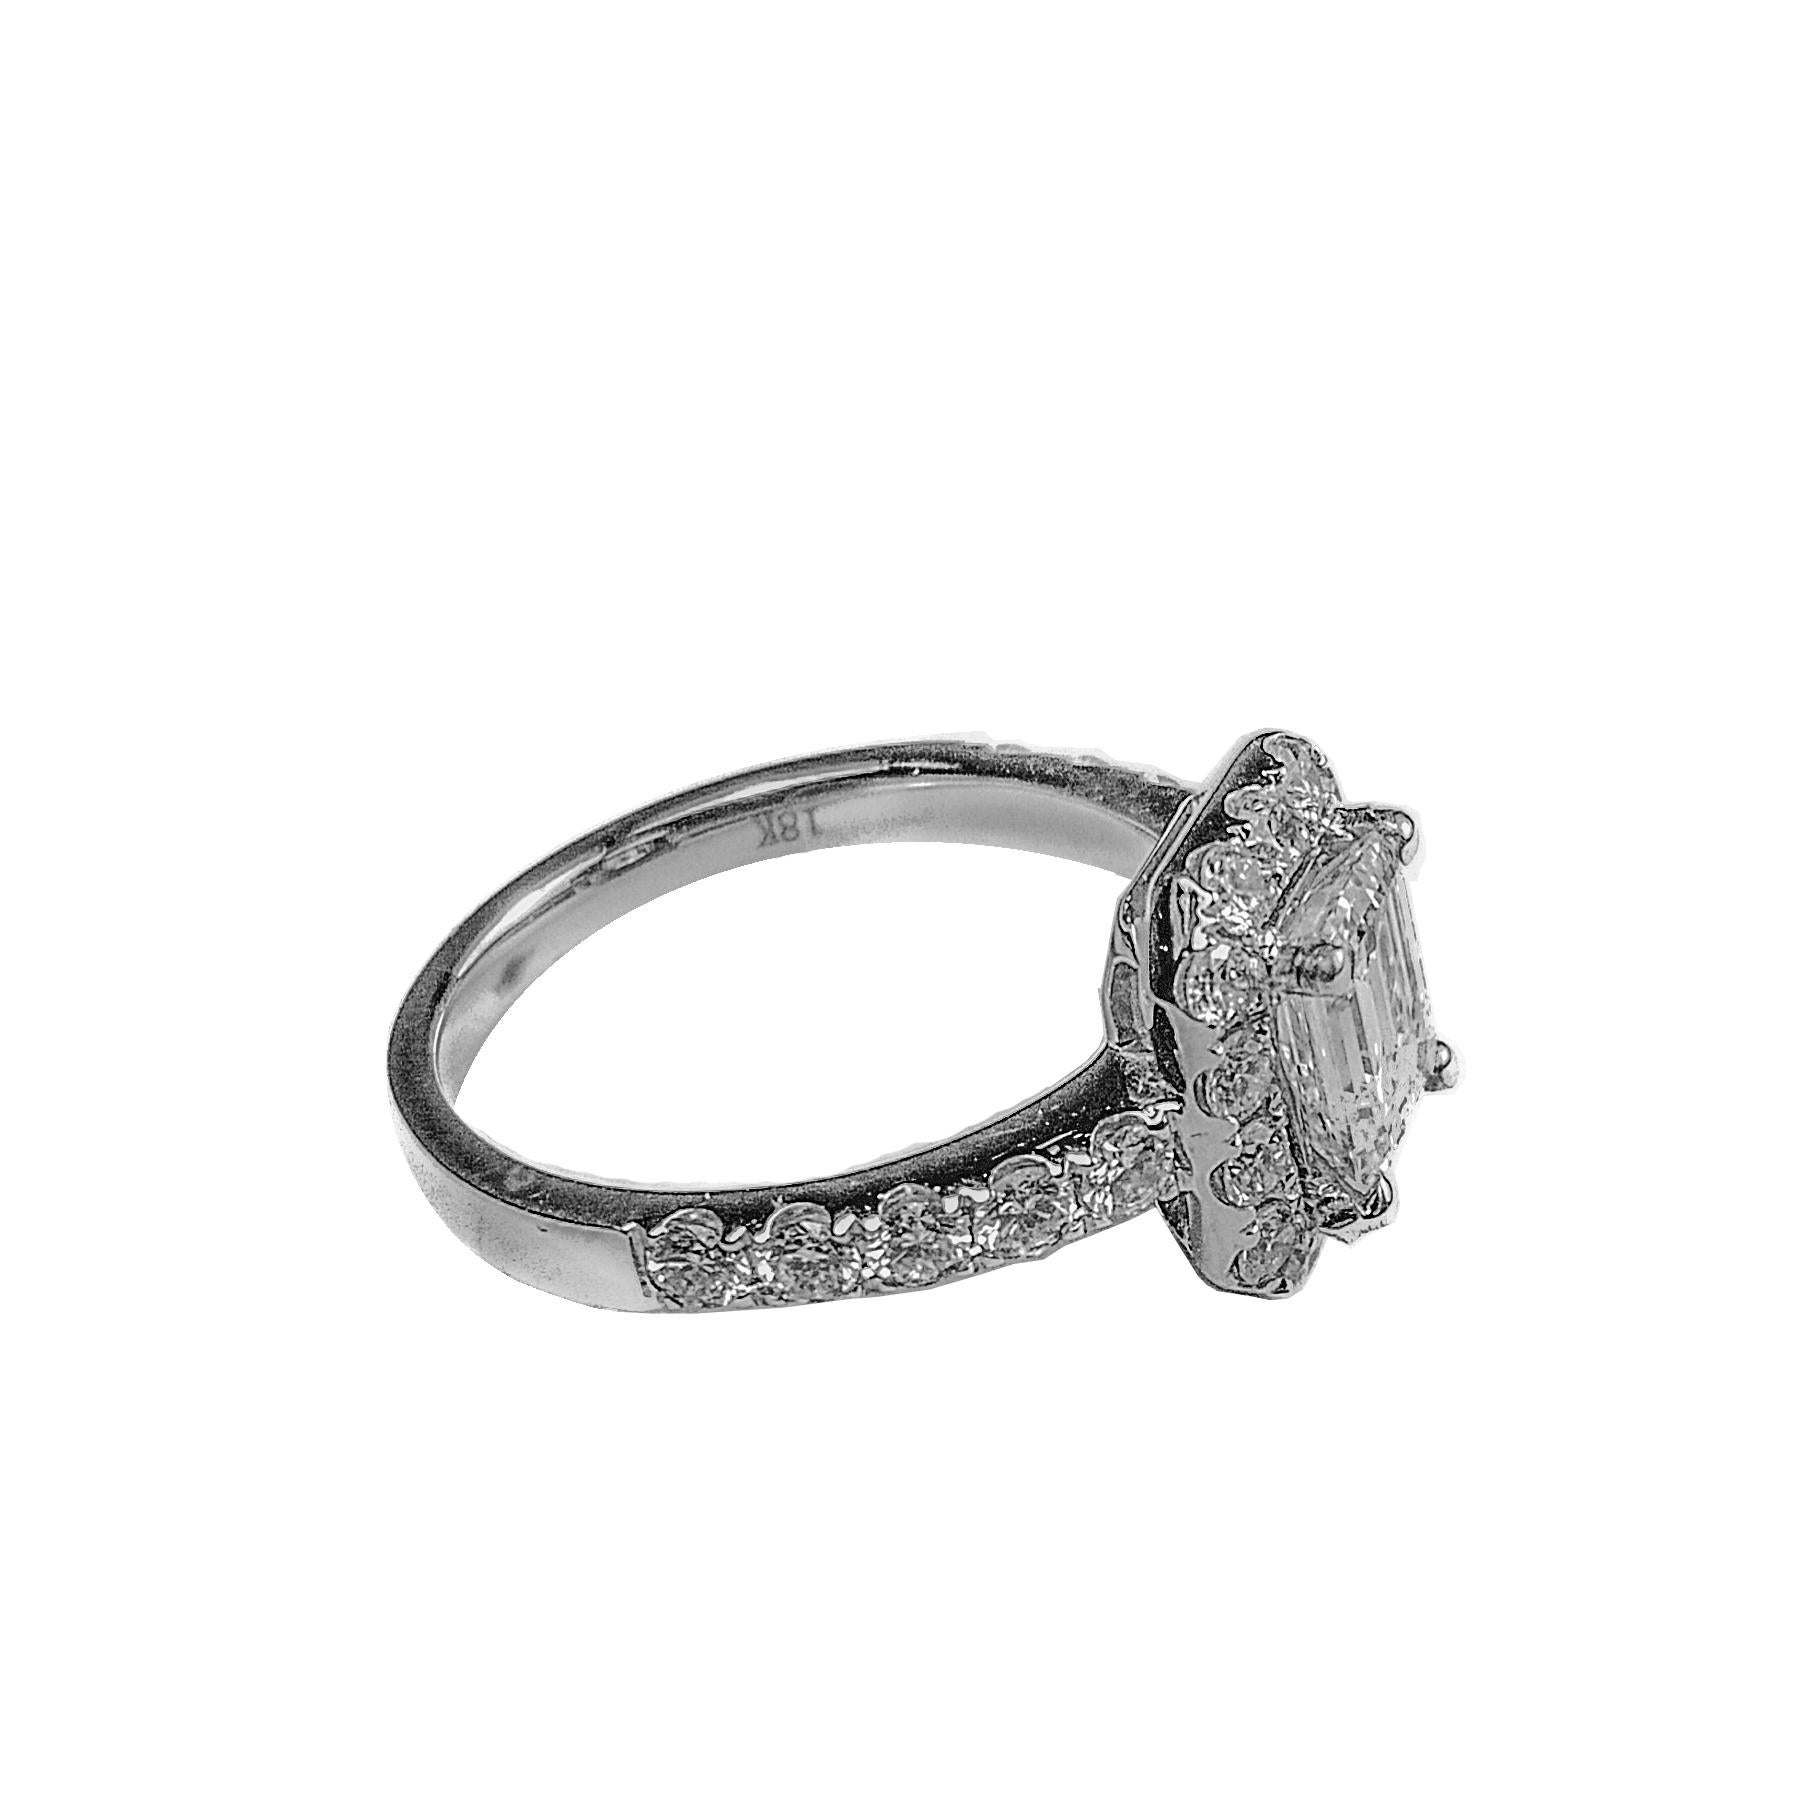 Contemporary Emerald Cut Diamond White Gold Ring